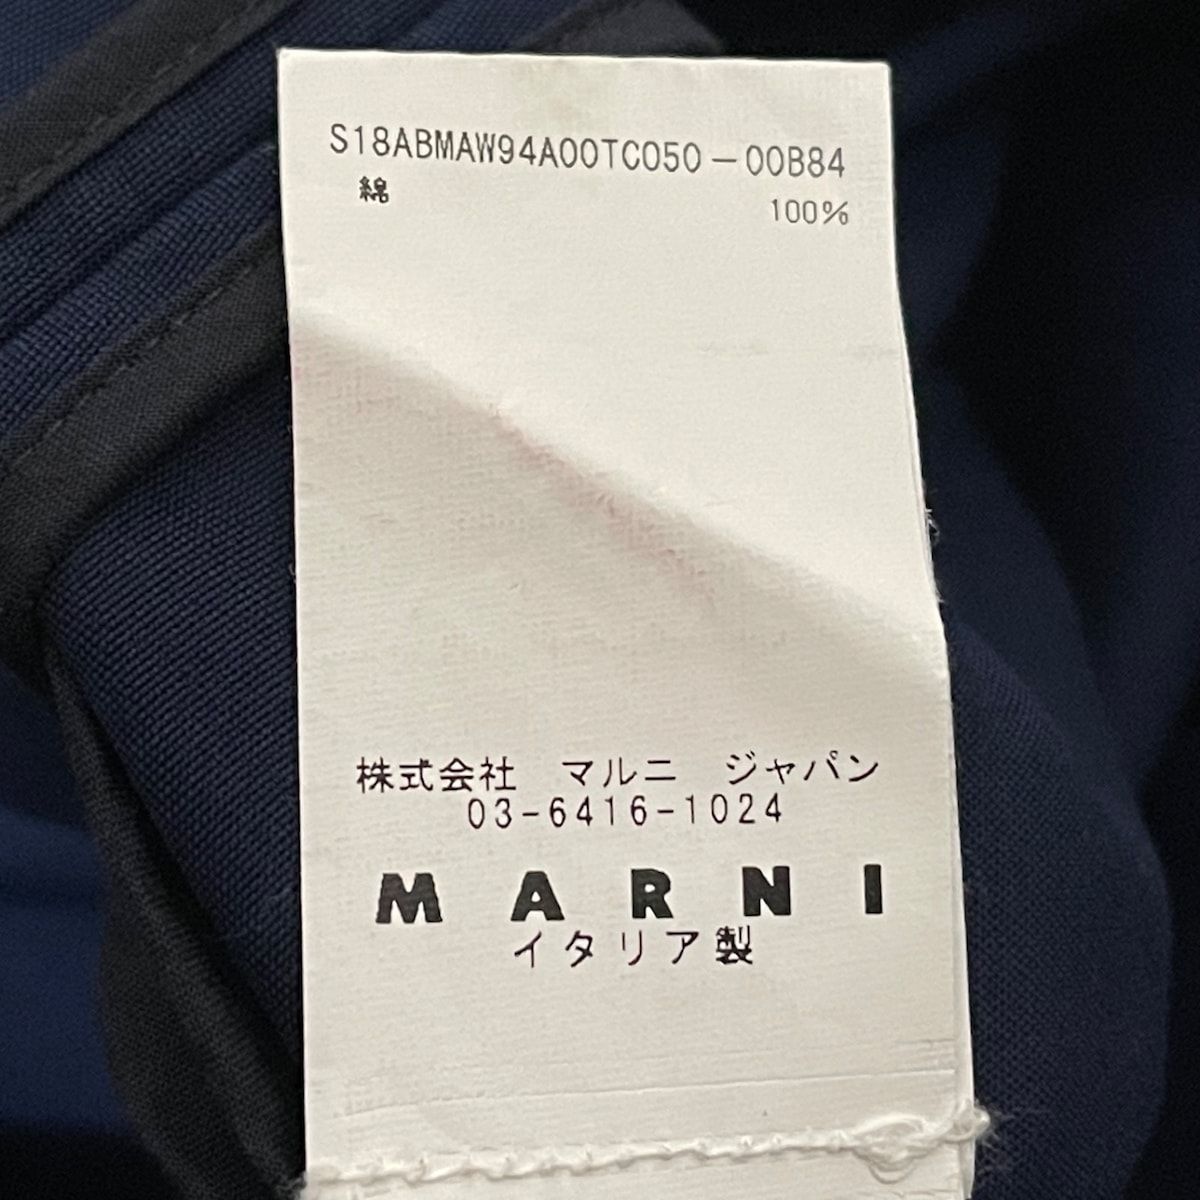 【美品】MARNI   マルニ    ワンピース  サイズ 40   ネイビービショップ